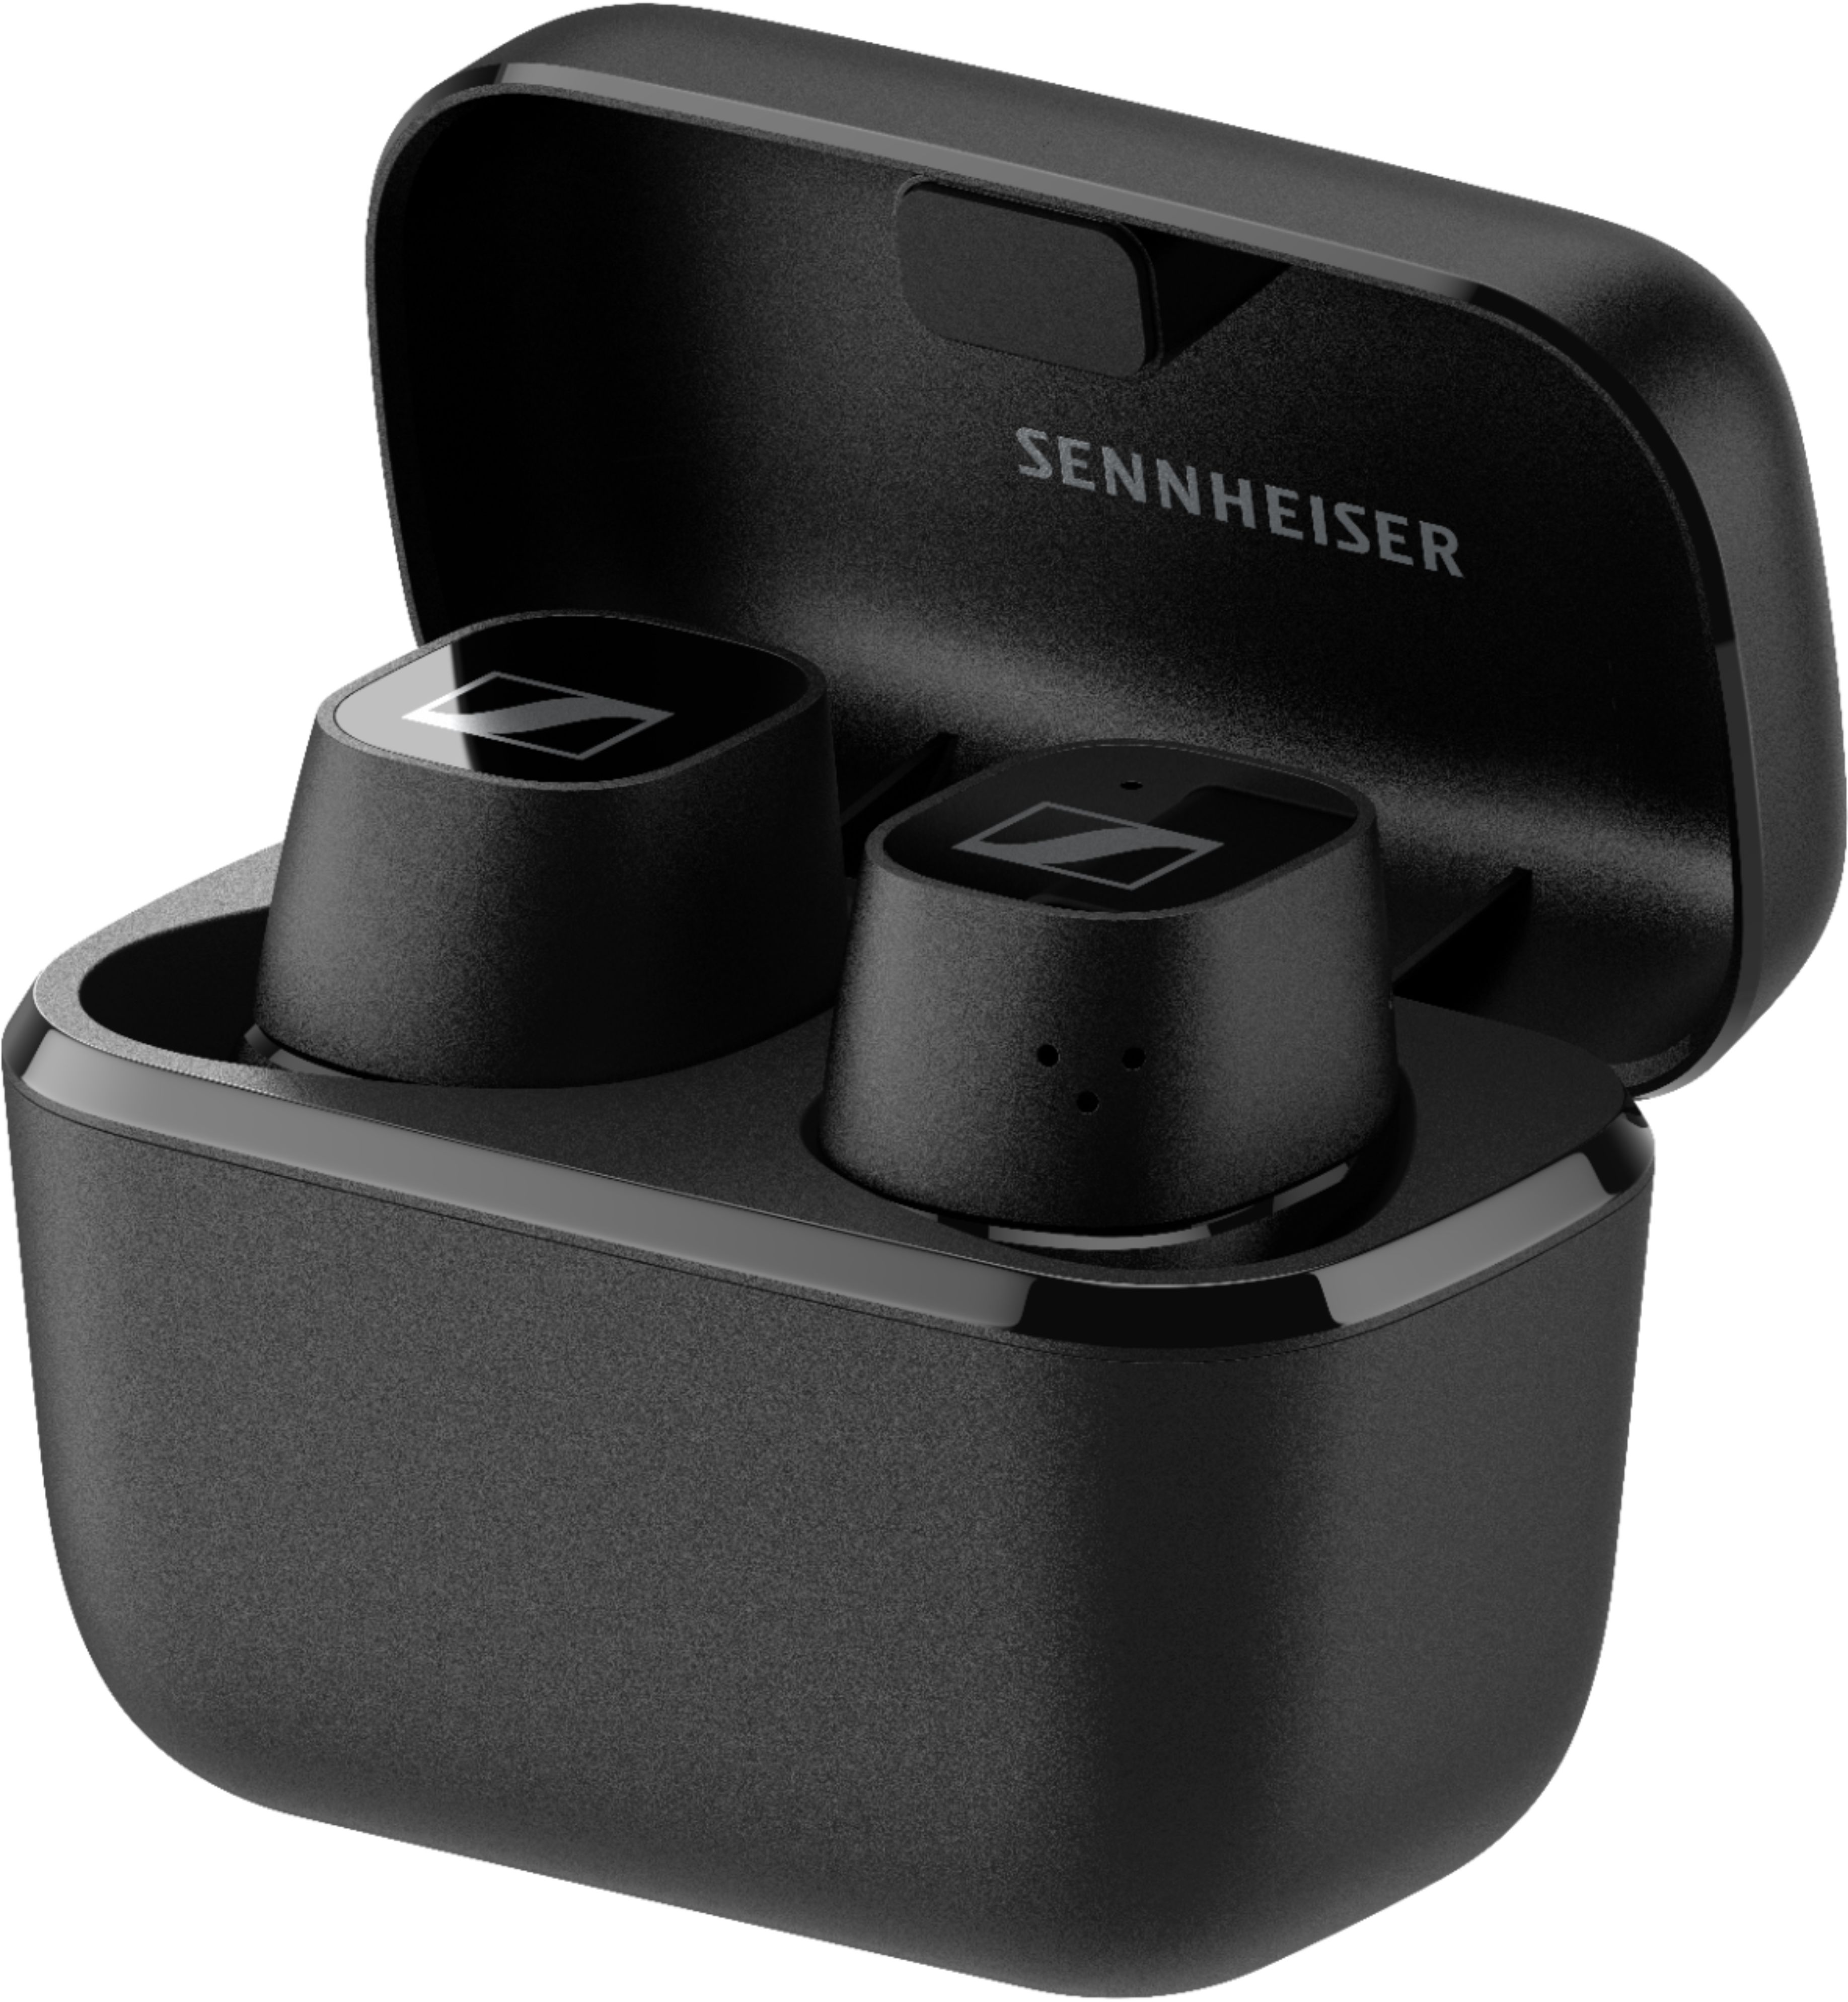 Best Buy: Sennheiser CX 400BT True Wireless Earbud Headphones